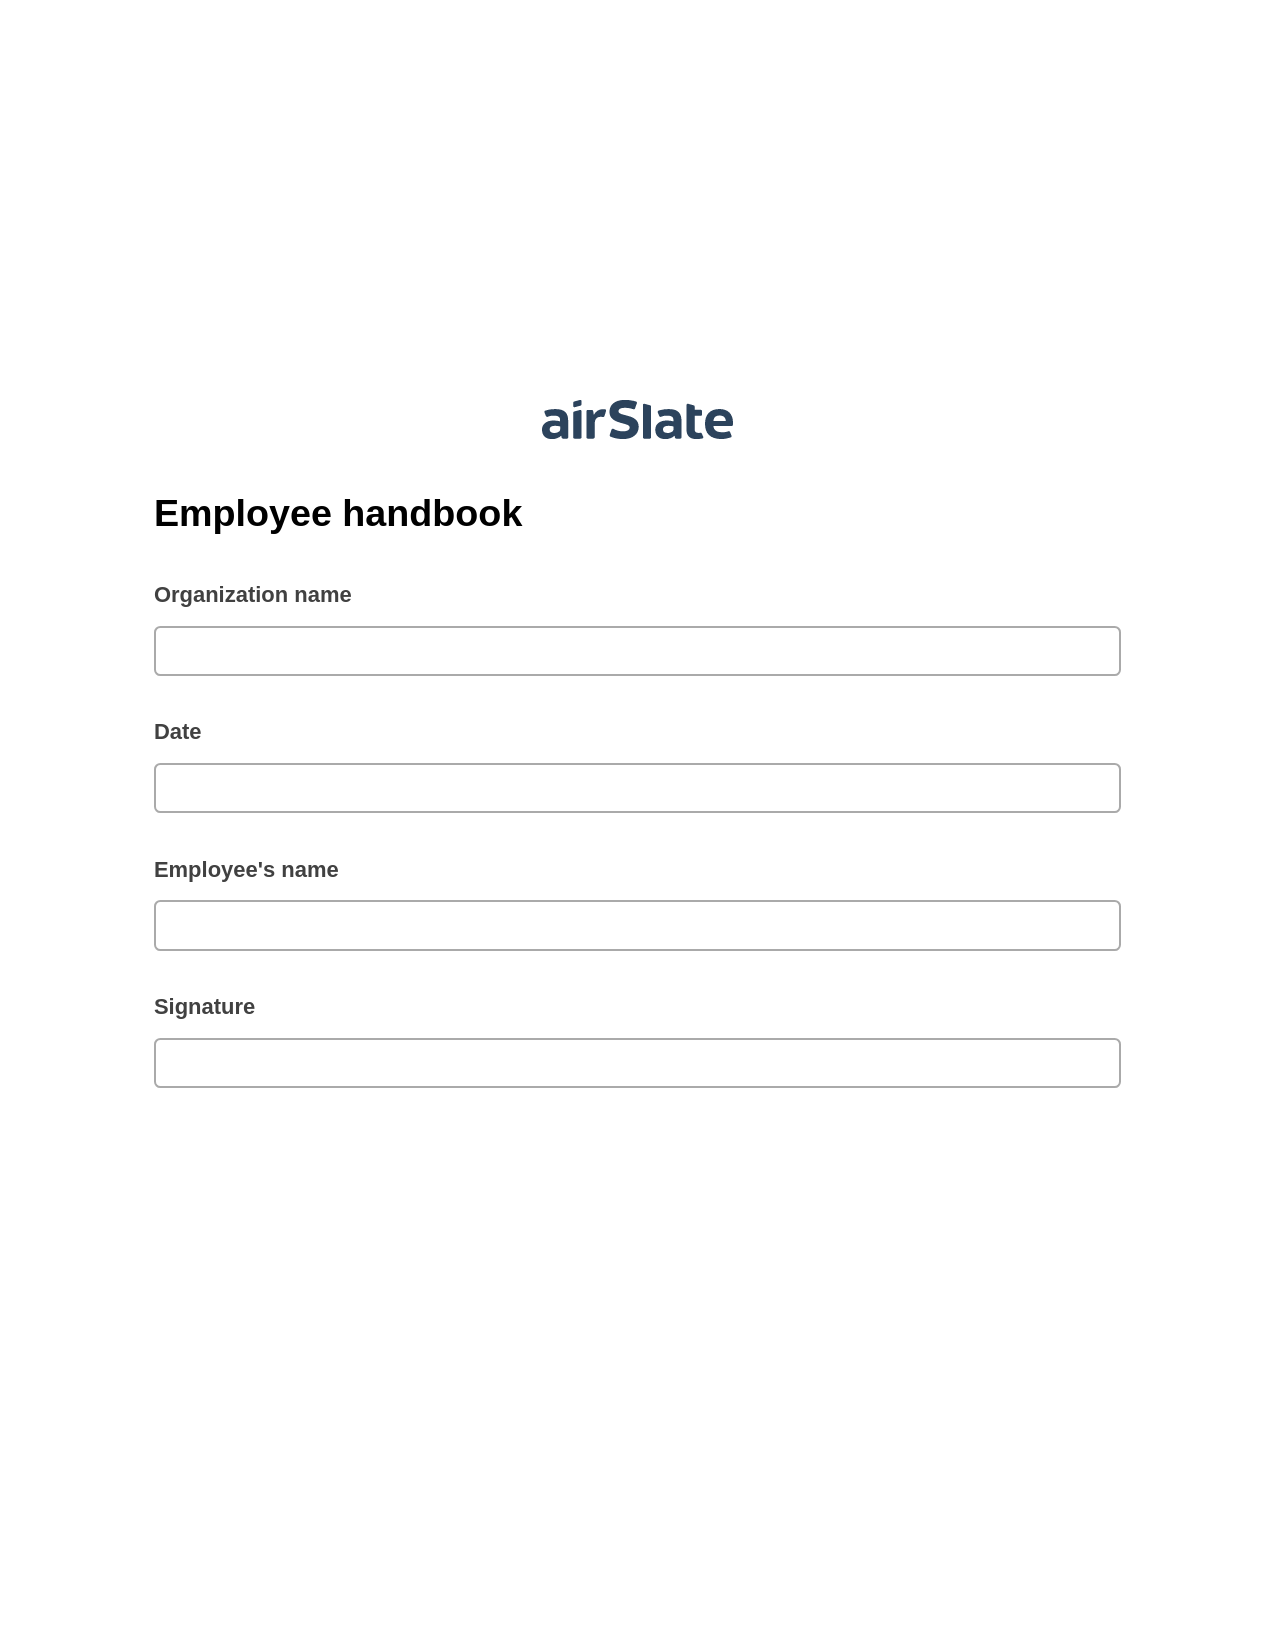 Multirole Employee handbook Pre-fill Document Bot, Send Mailchimp Campaign Bot, Dropbox Bot